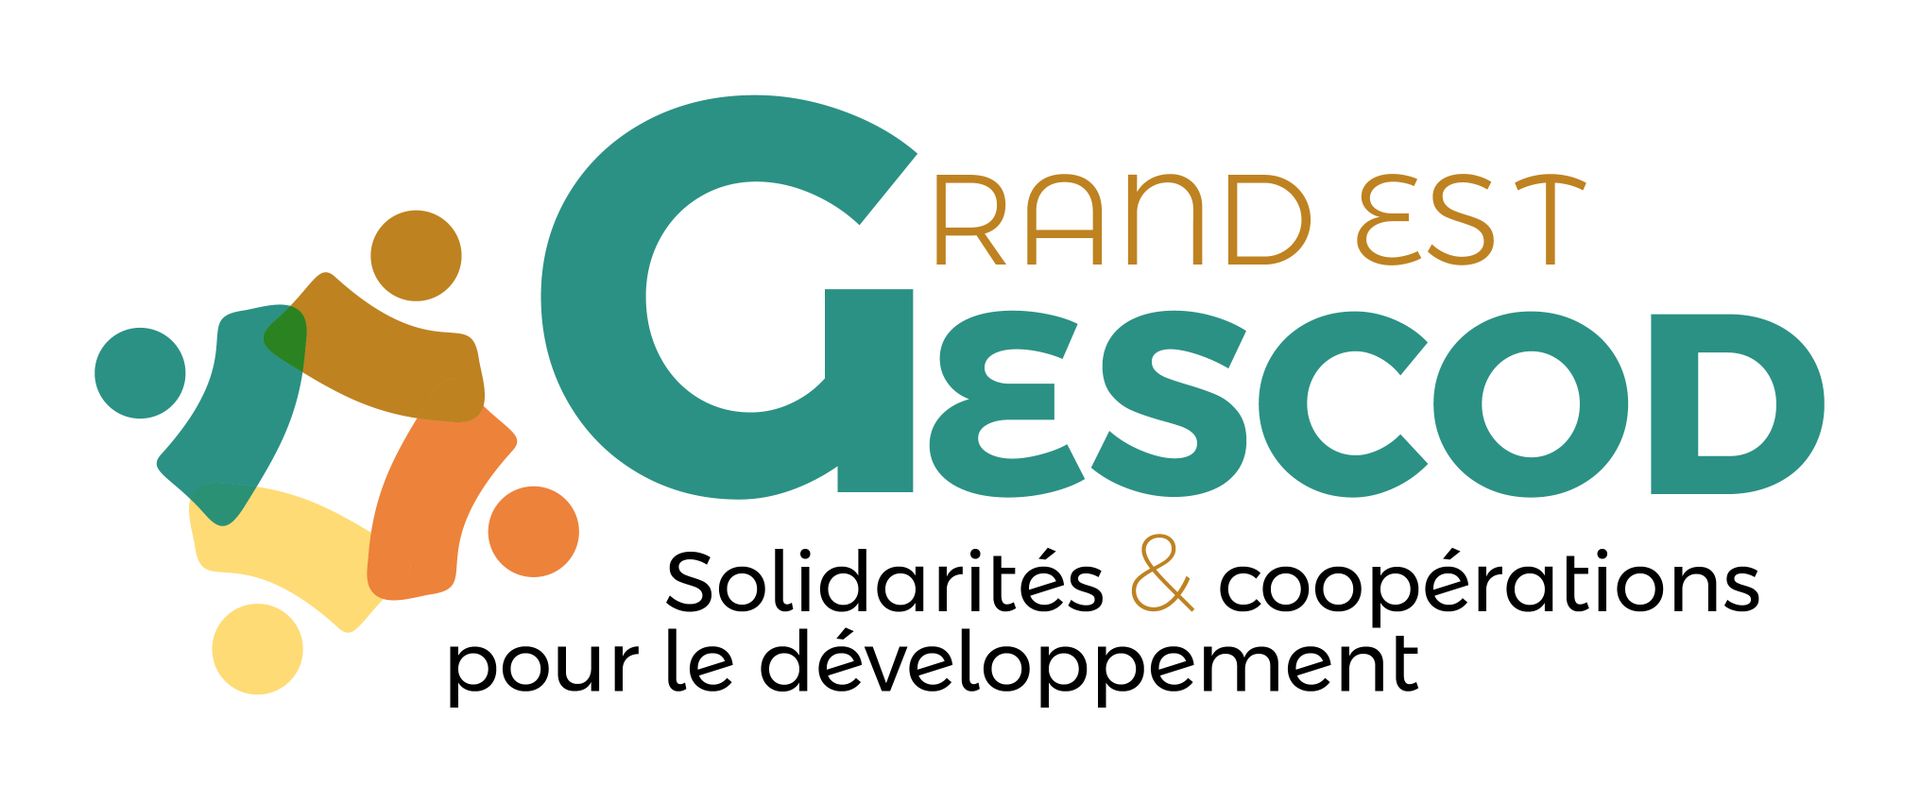 Gescod - Formation Communiquer sur un projet de solidarité